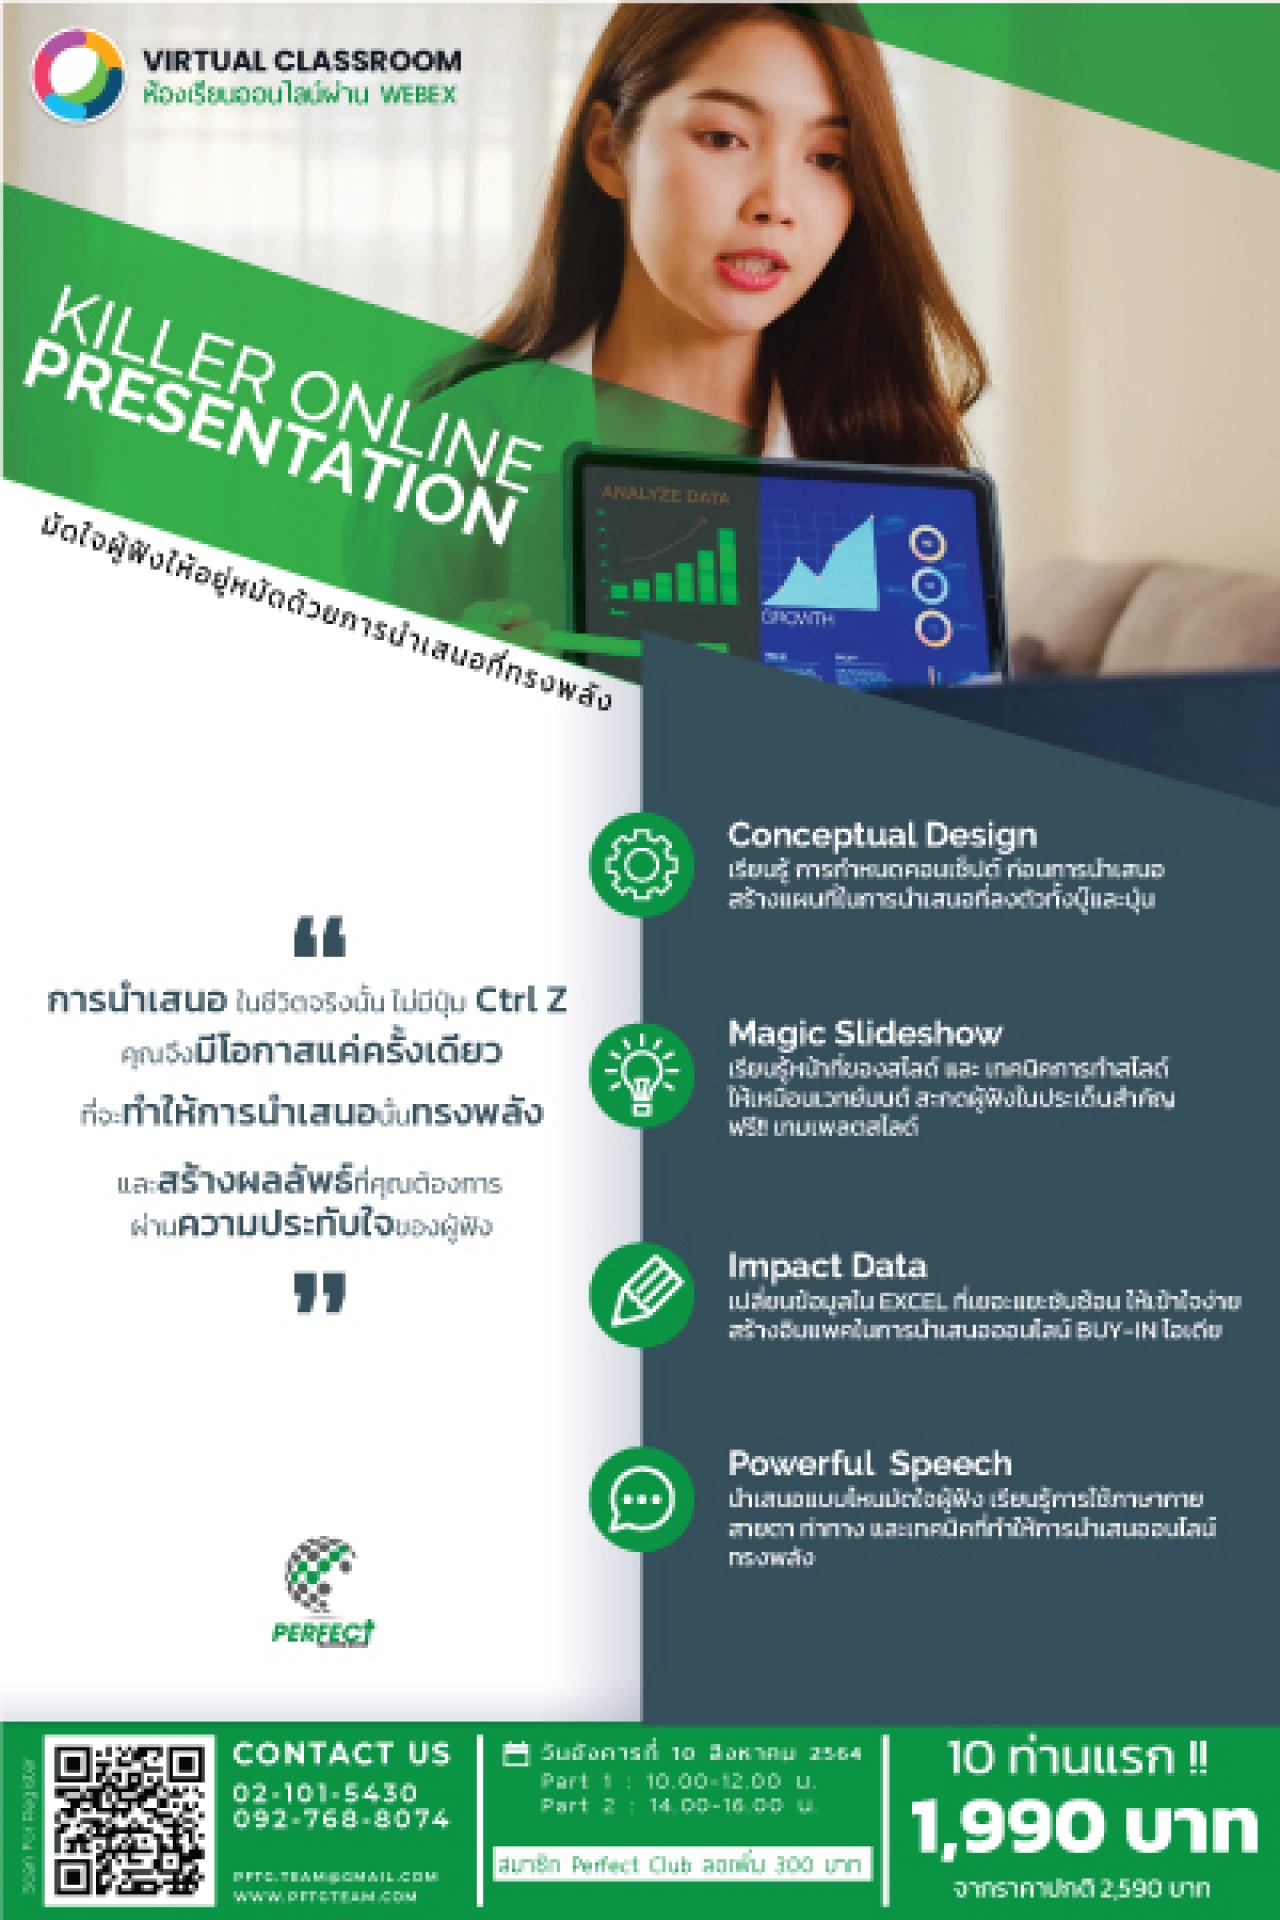 สัมมนาOnline >>  Killer Online Presentation “มัดใจคนฟังด้วยการนำเสนอออนไลน์ที่ทรงพลัง”